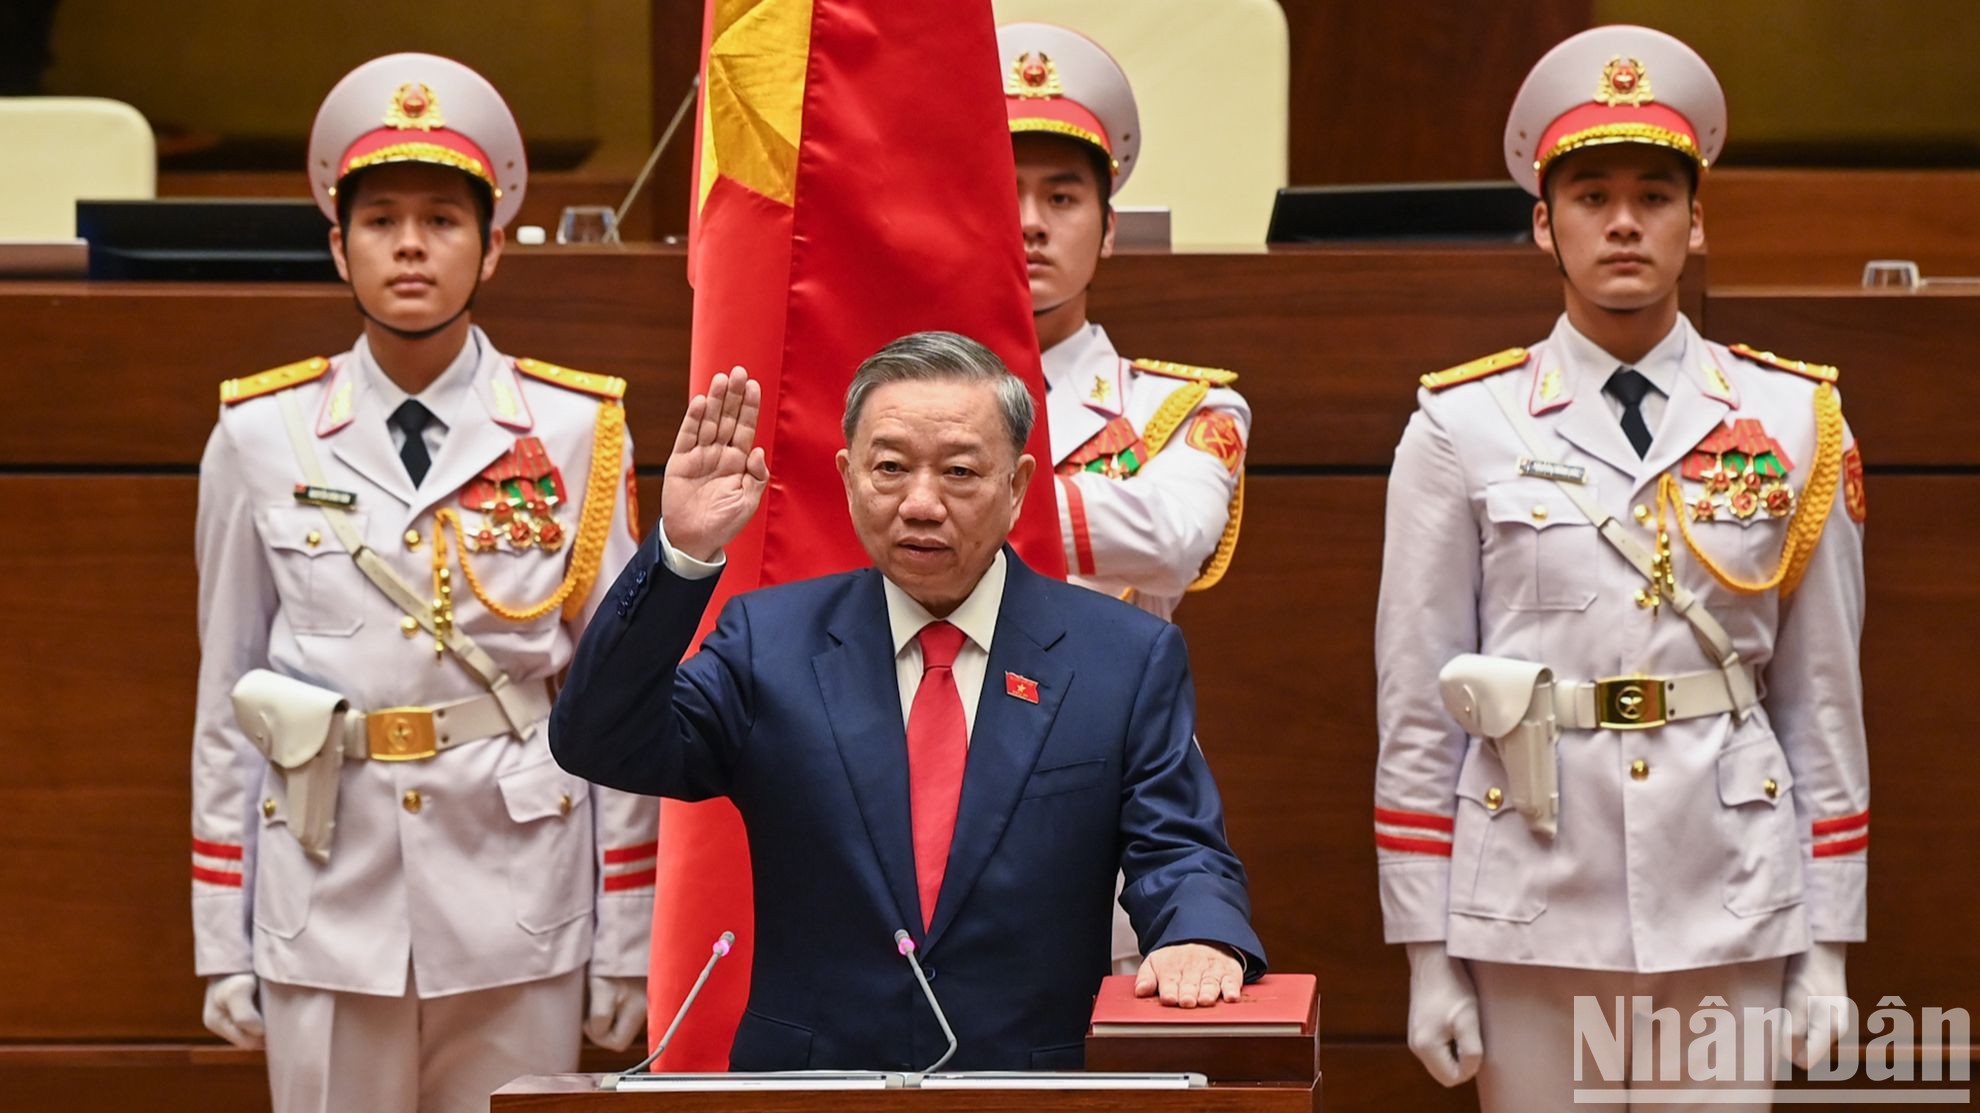 Đồng chí Tô Lâm tuyên thệ nhậm chức Chủ tịch nước Cộng hòa xã hội chủ nghĩa Việt Nam nhiệm kỳ 2021-2026.